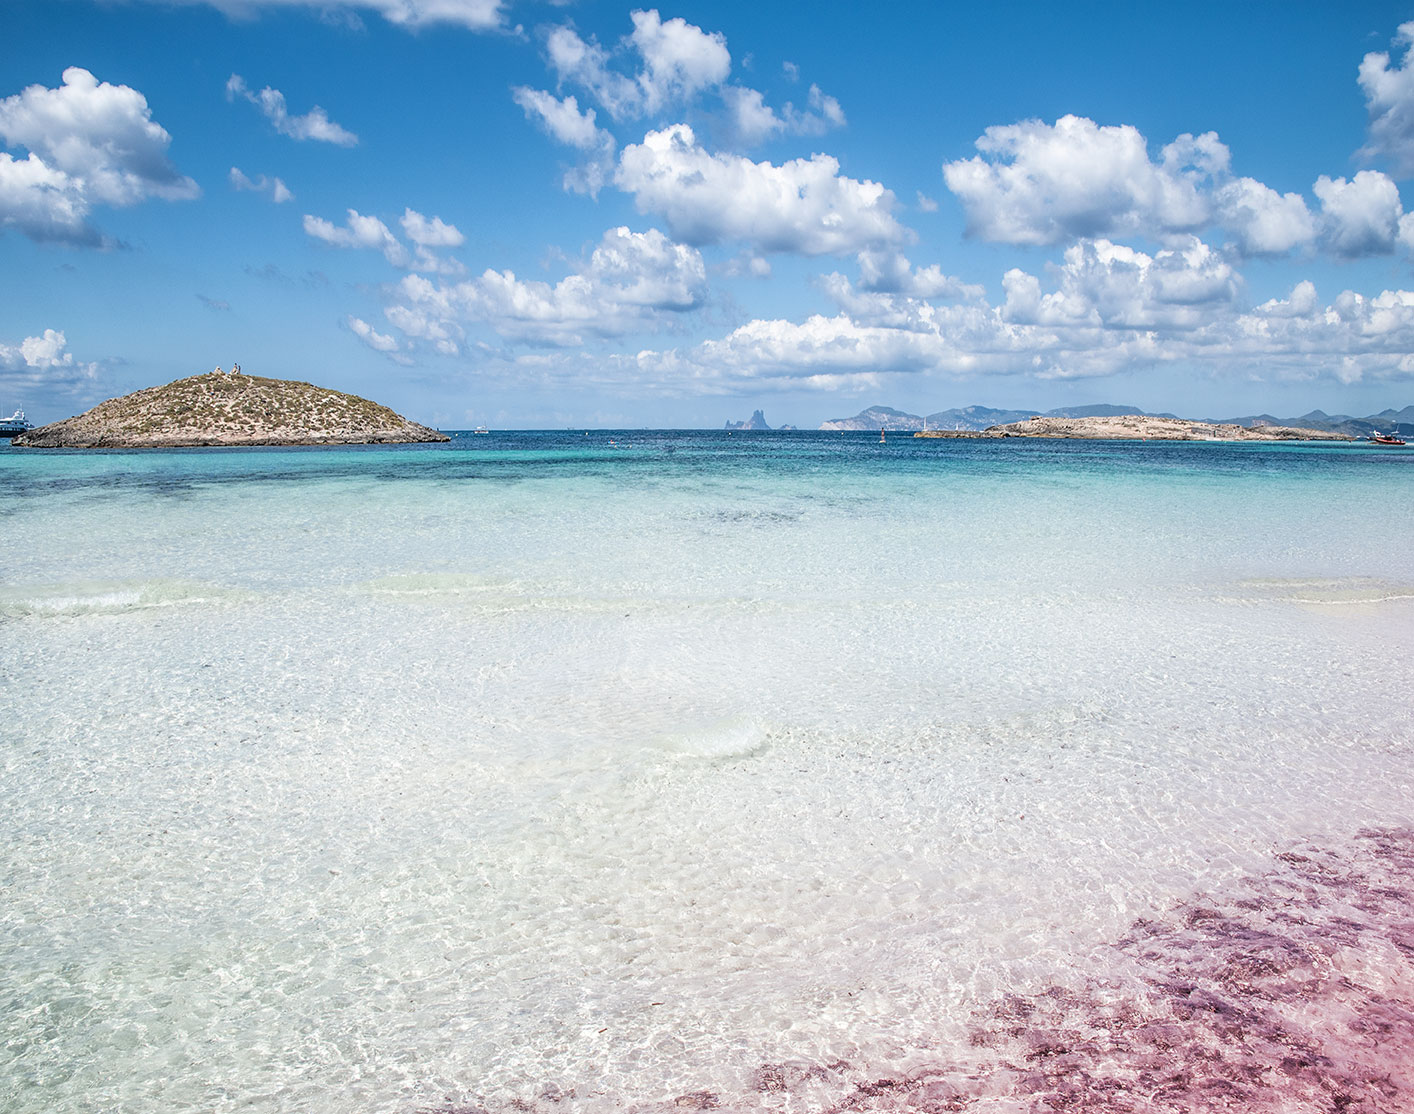 Platja de les Illetes and Illa de Tramuntana with white dans pink sand and transparent water, Formentera, Spain, (Nos Dren).